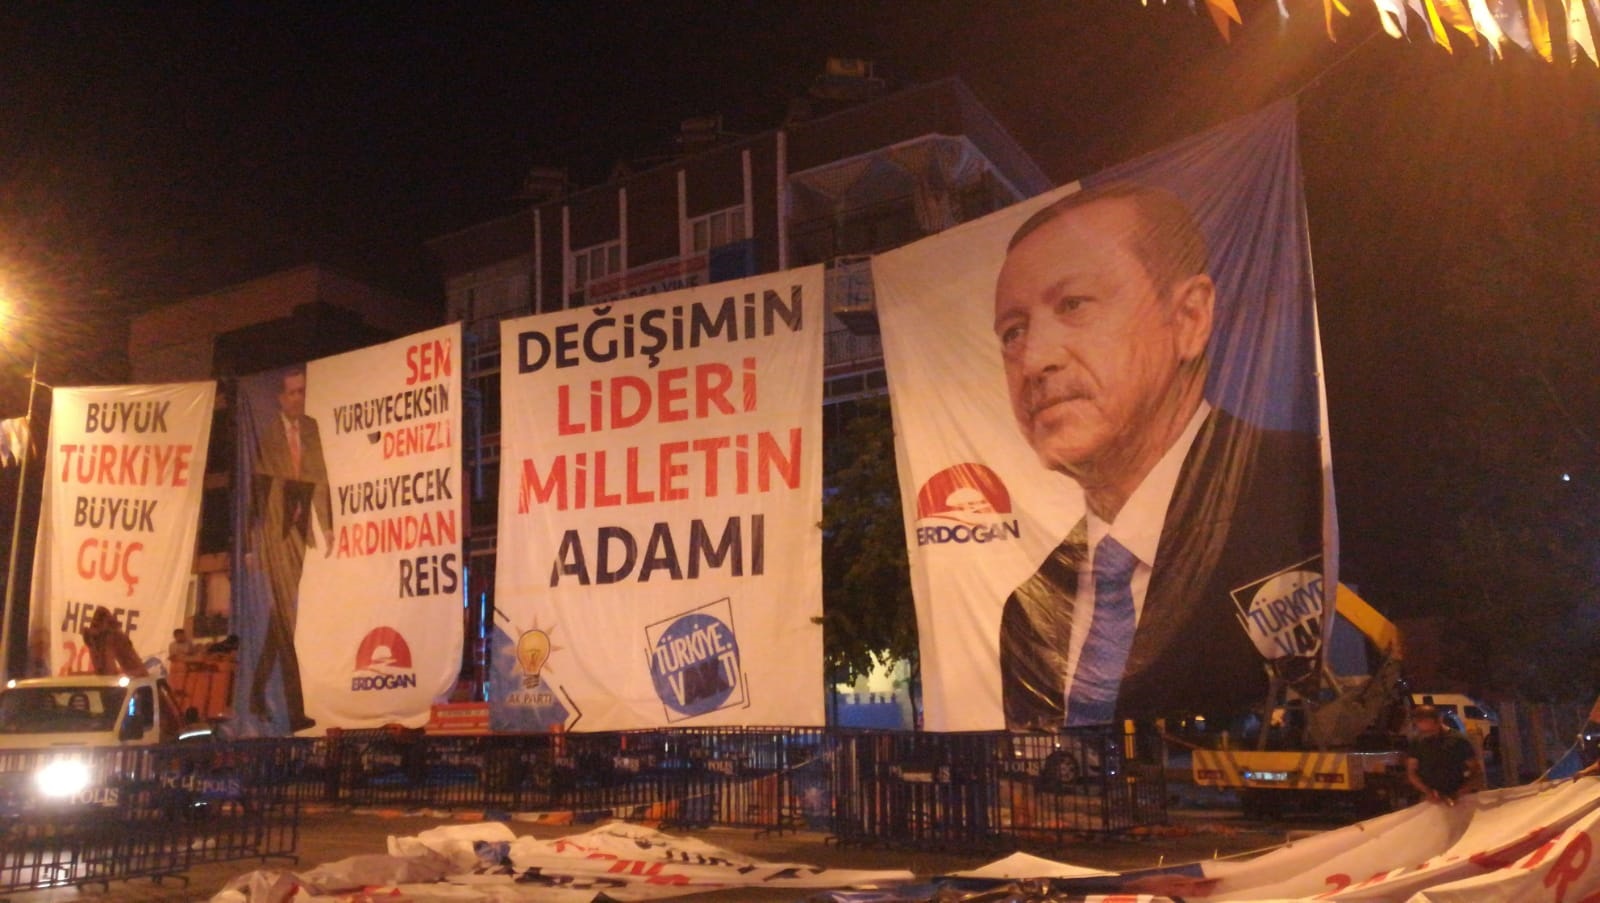 Cumhurbaşkanı Erdoğan’ın Denizli mitingi için büyük bir çalışma var.